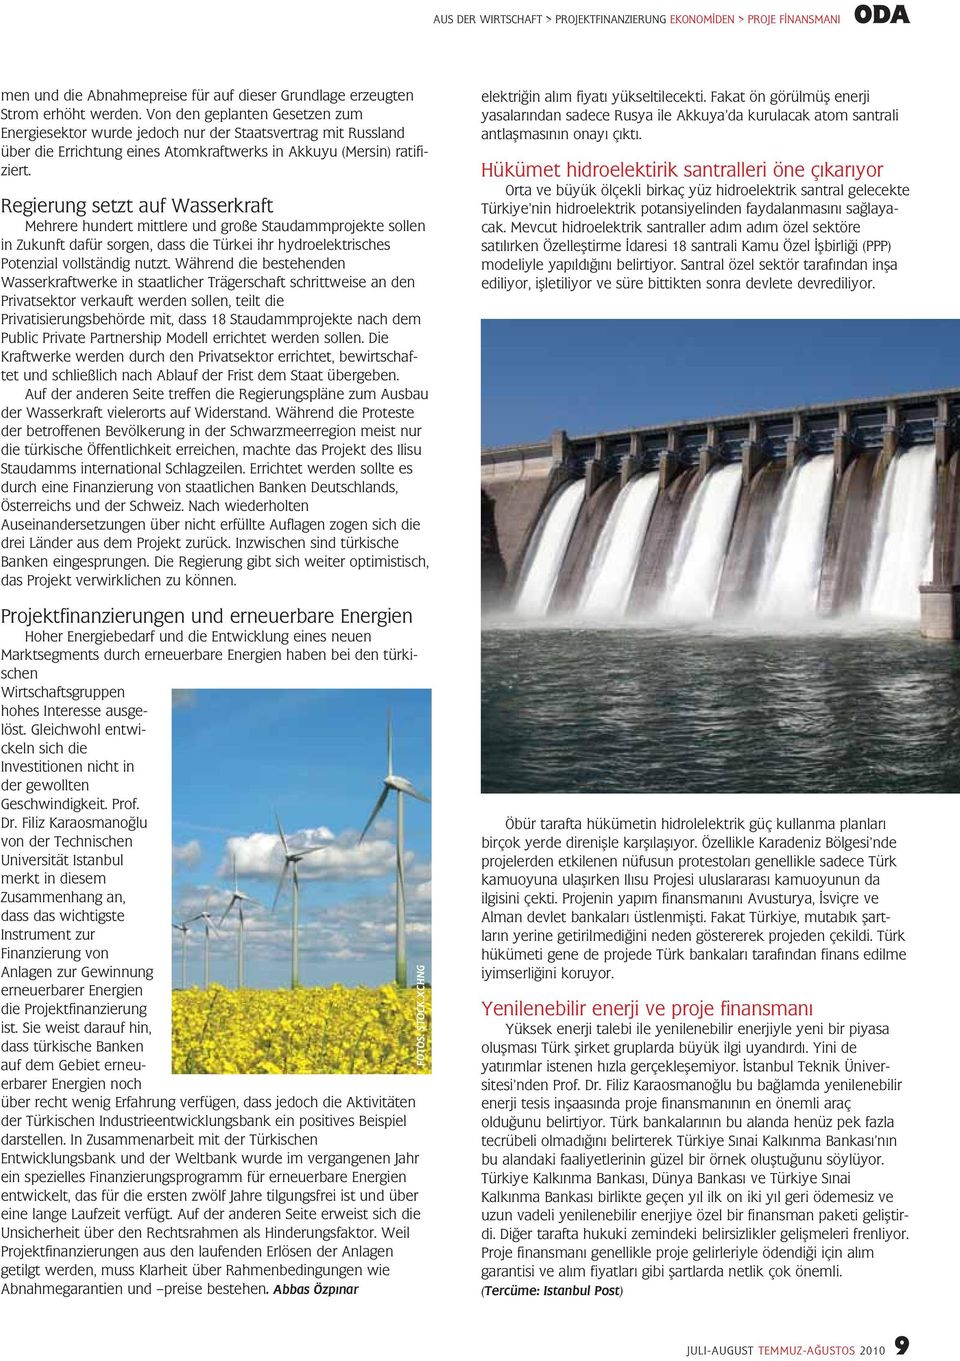 Regierung setzt auf Wasserkraft Mehrere hundert mittlere und große Staudammprojekte sollen in Zukunft dafür sorgen, dass die Türkei ihr hydroelektrisches Potenzial vollständig nutzt.